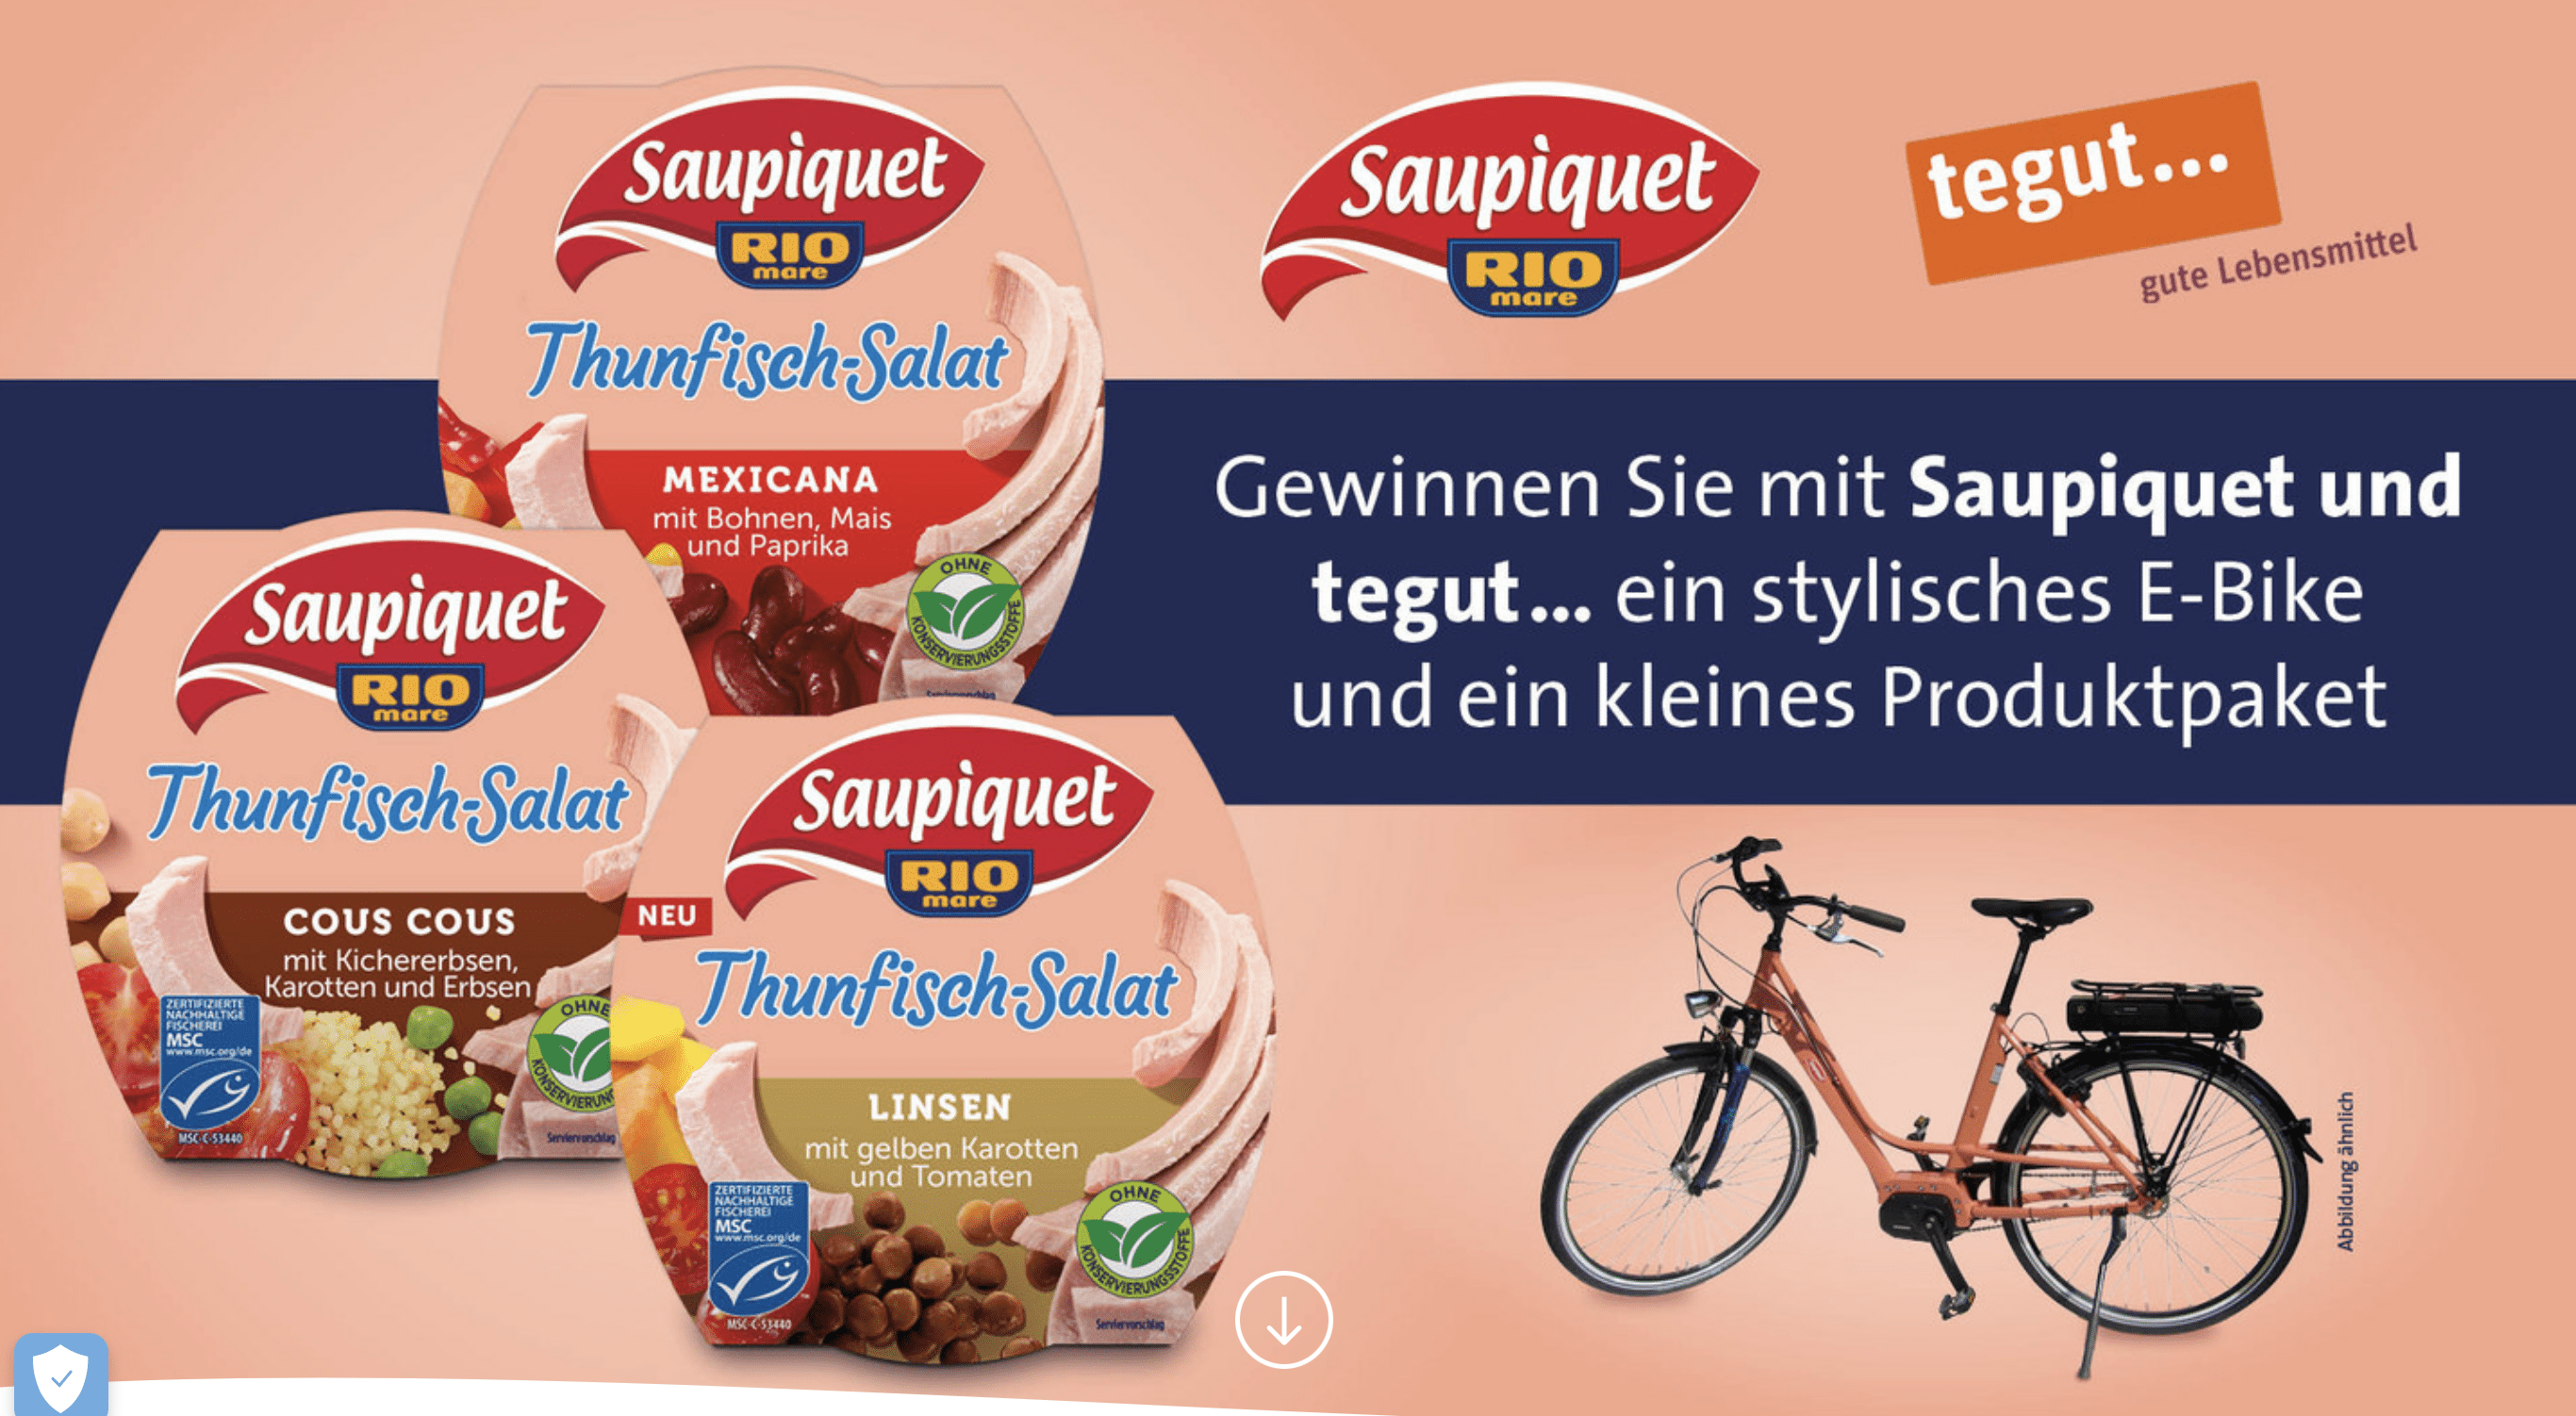 case_tegut verlost ein E-Bike_Saupiquet Produktpaket